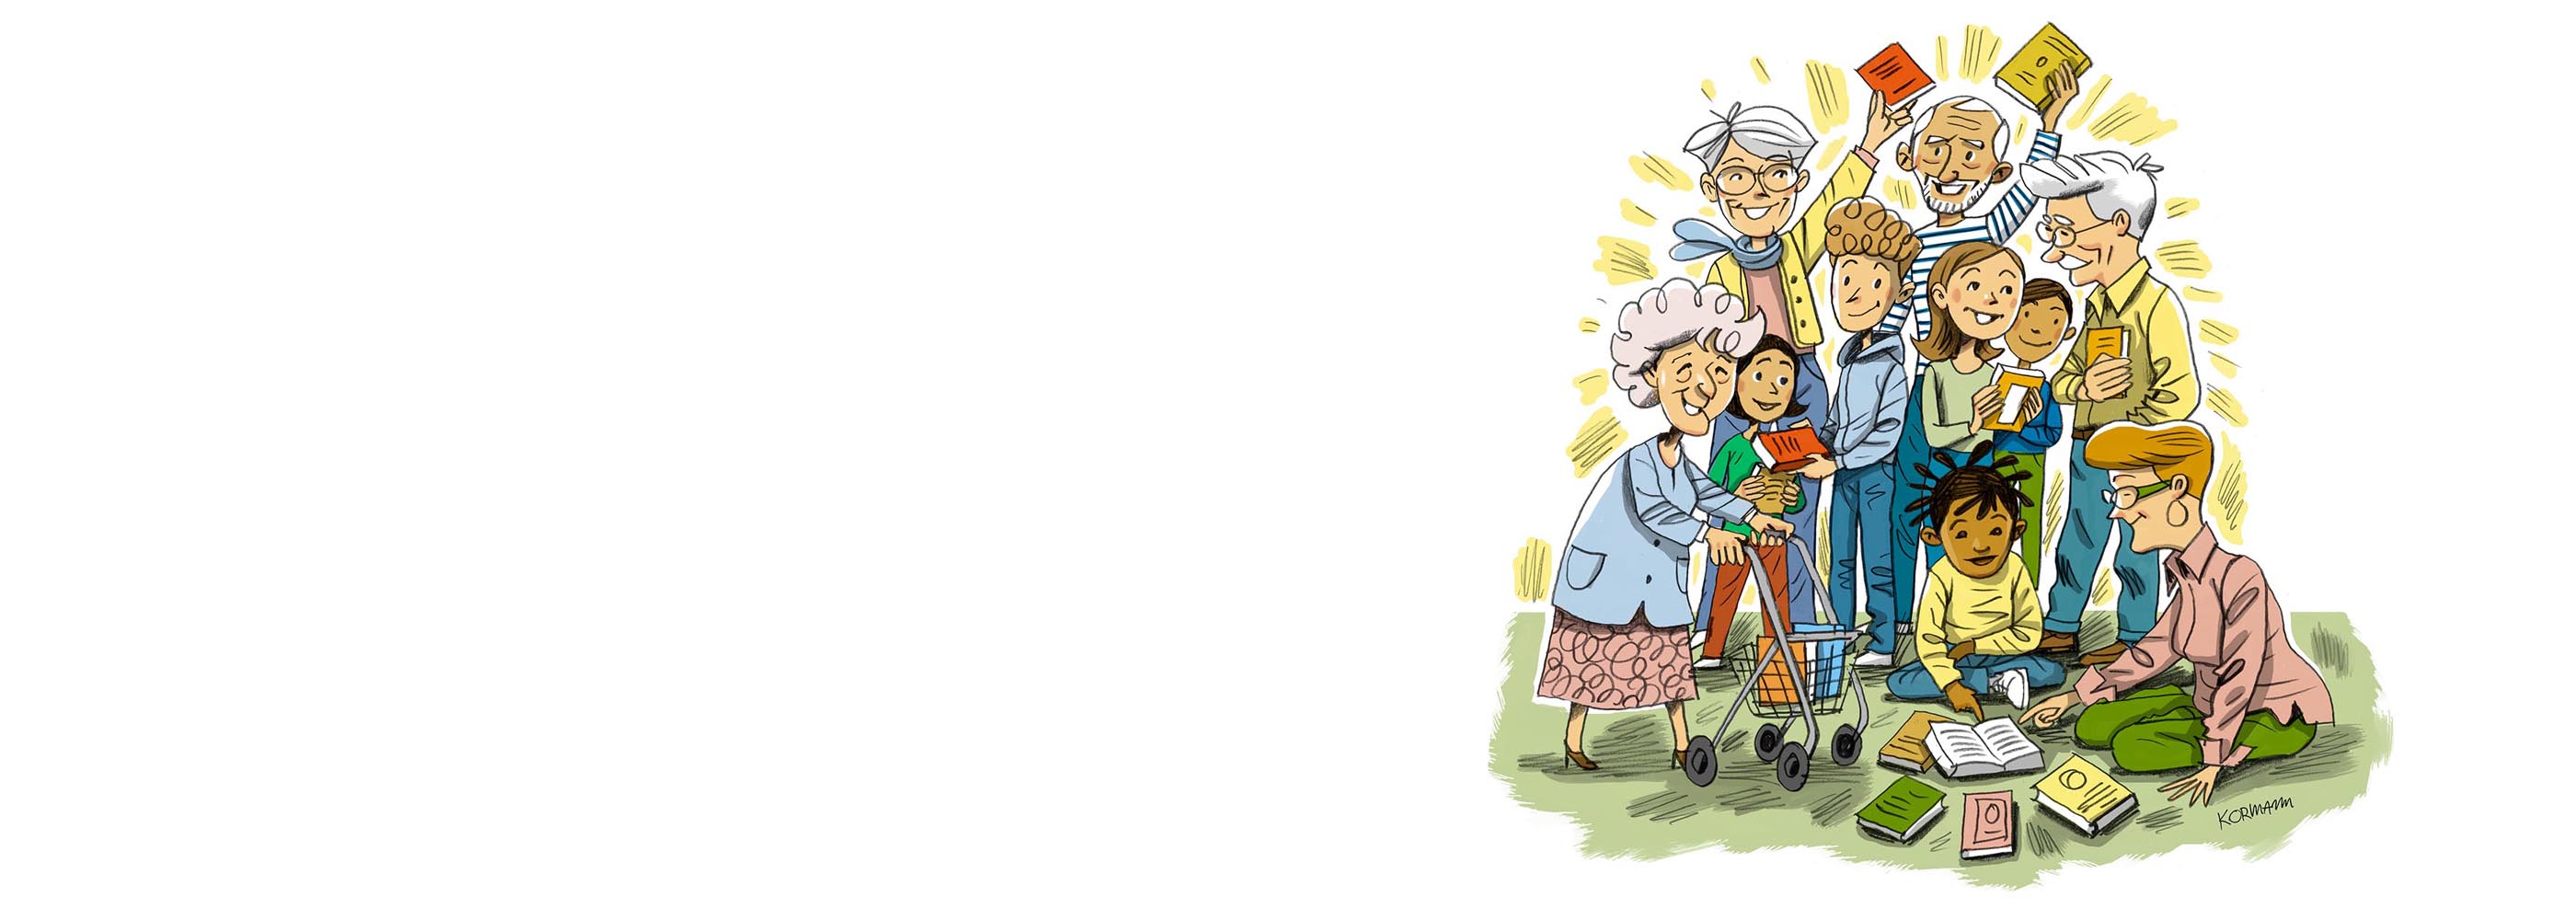 Eine Illustration: Jüngere und ältere Menschen stehen lachend zusammen und halten Bücher in der Hand. 